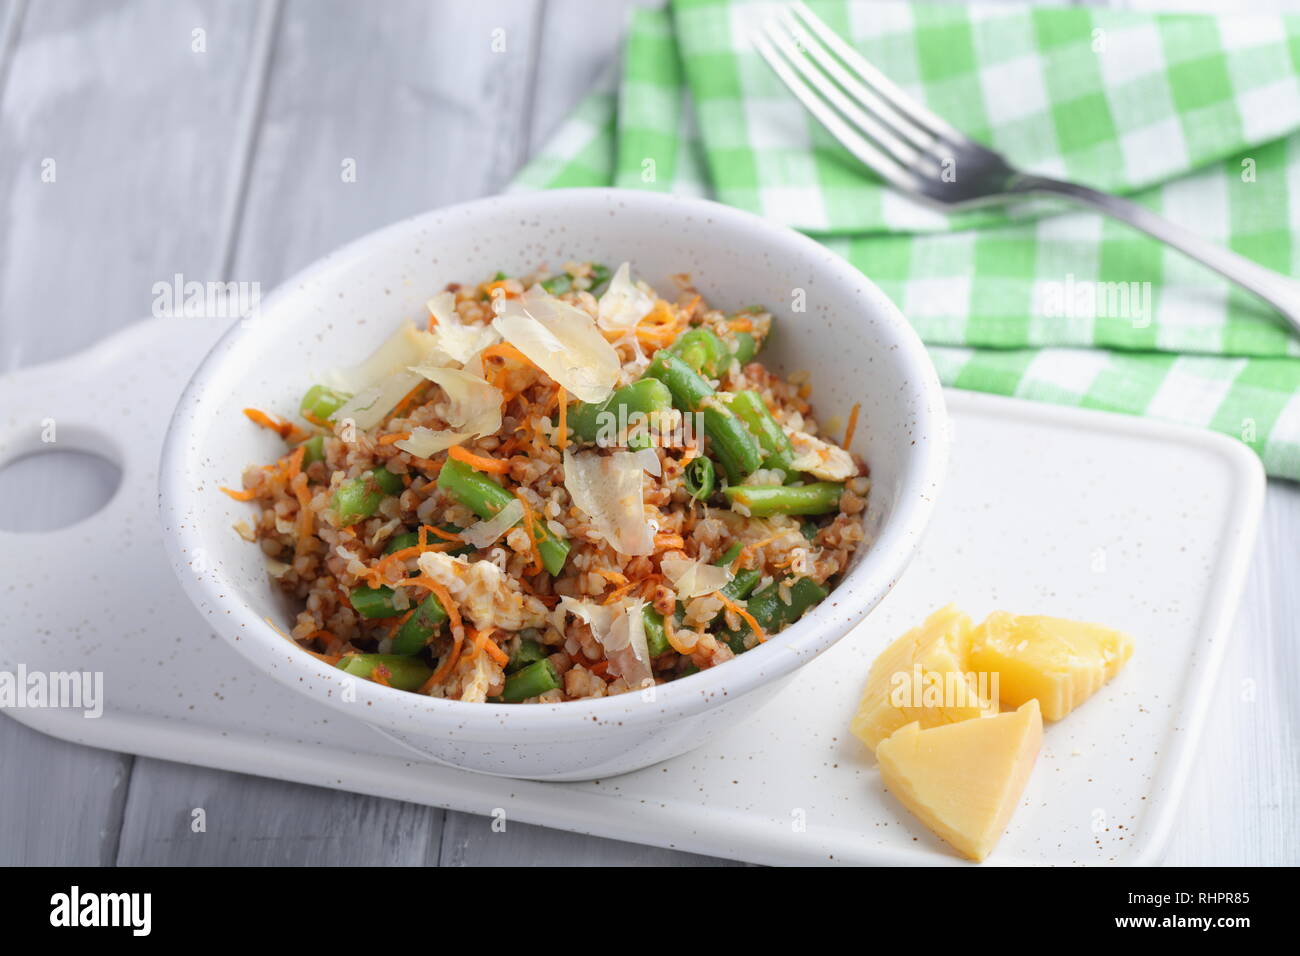 grechetto végétalien, nouveau plat de cuisine russe avec carottes, asperges et parmesan. Repas d'été en cottage russe Banque D'Images